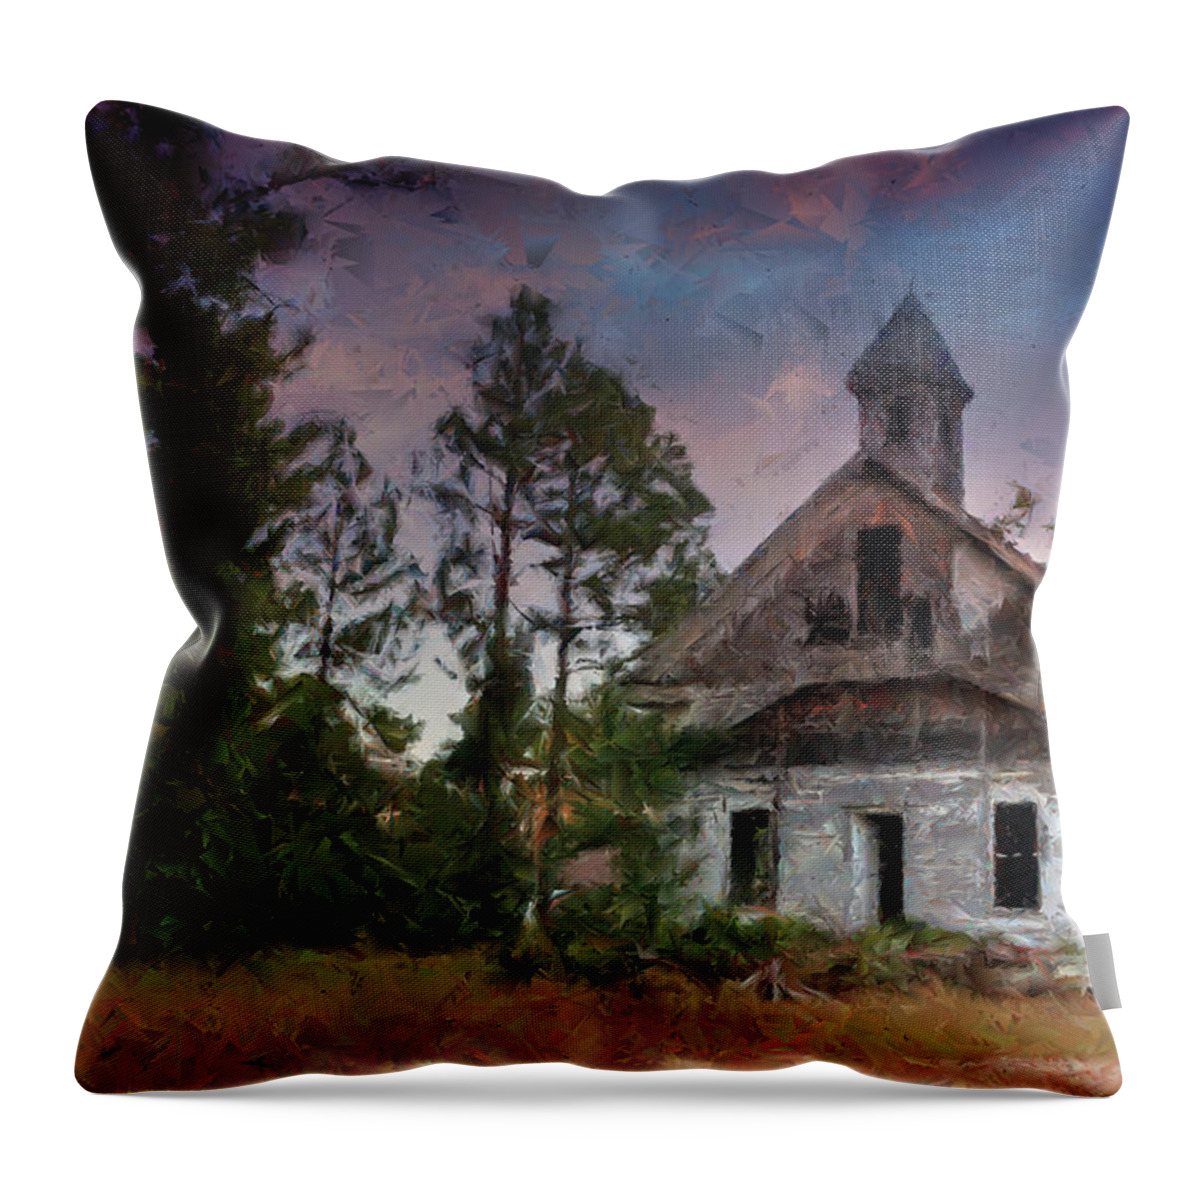 Fine Art Throw Pillow featuring the digital art Ezekiel New Congregational Methodist Church by Robert Harris